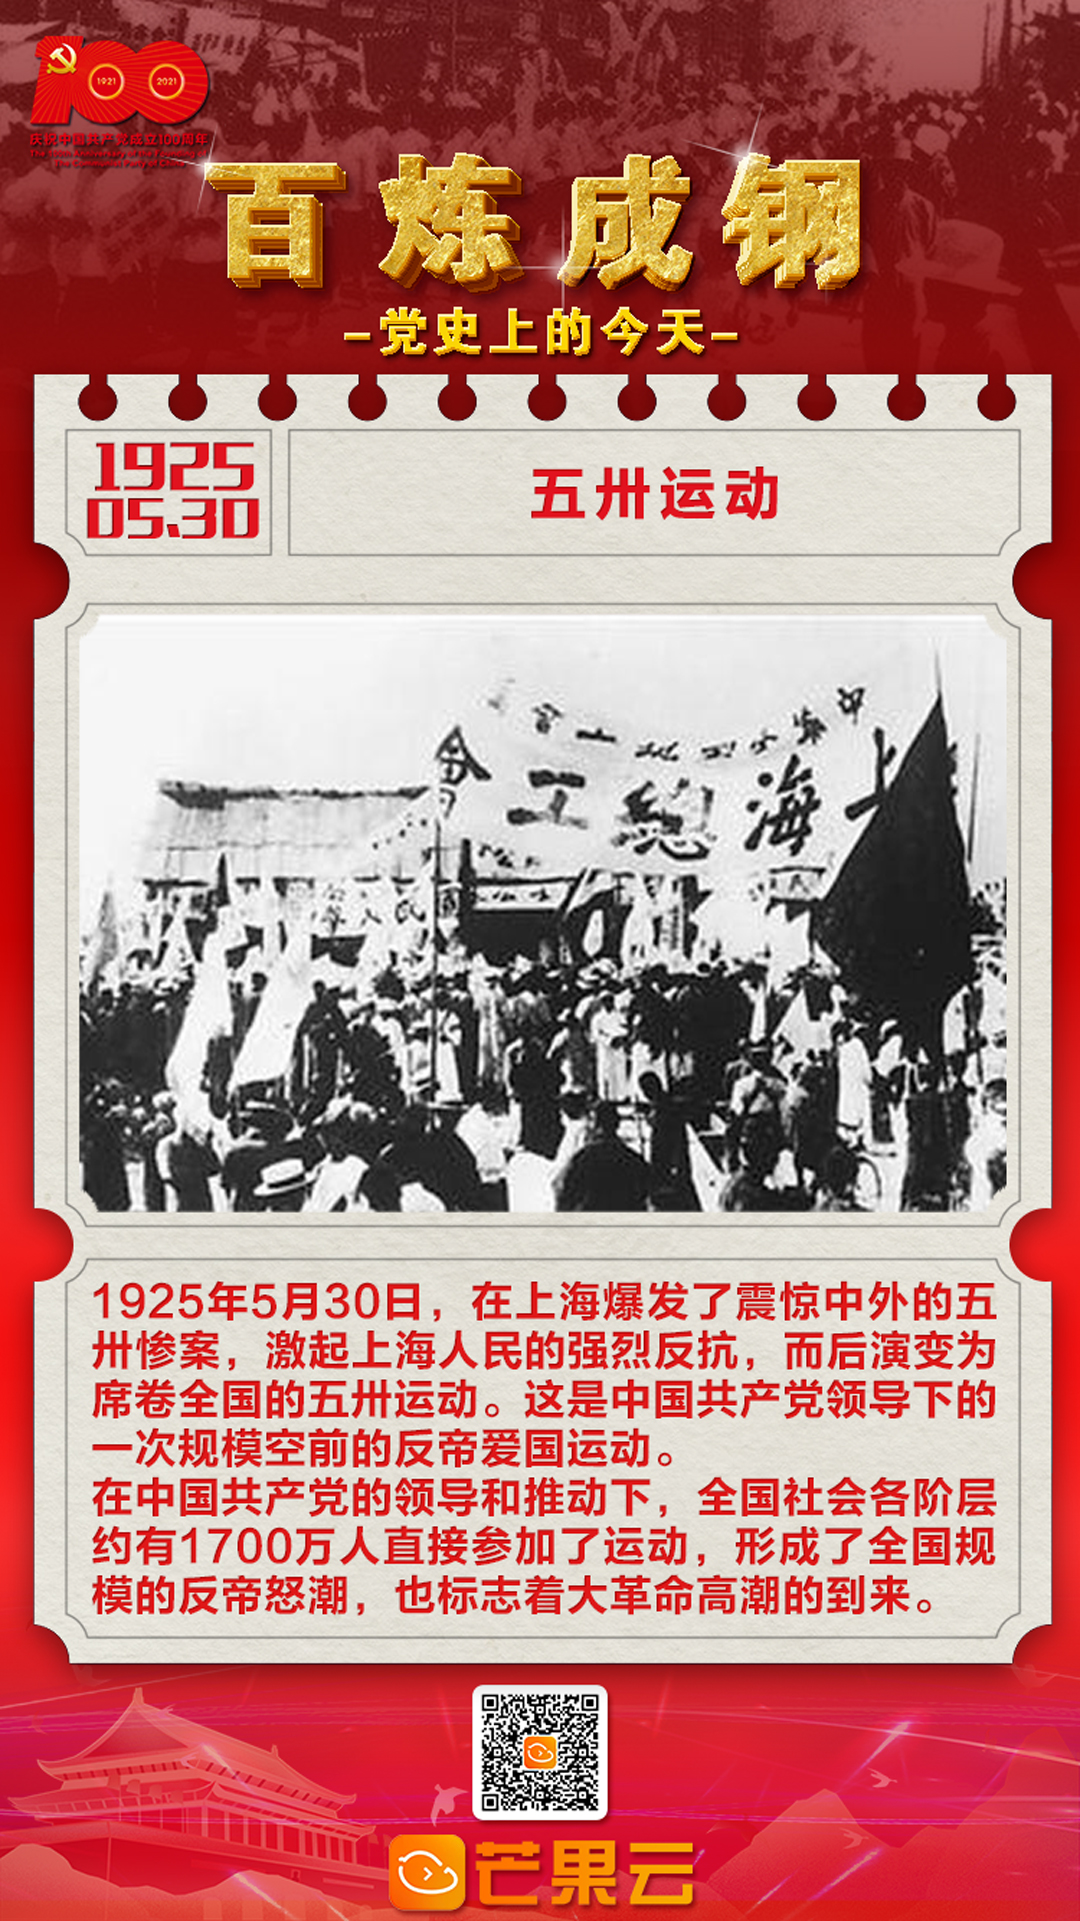 的五卅惨案,激起上海人民的强烈反抗,而后演变为席卷全国的五卅运动